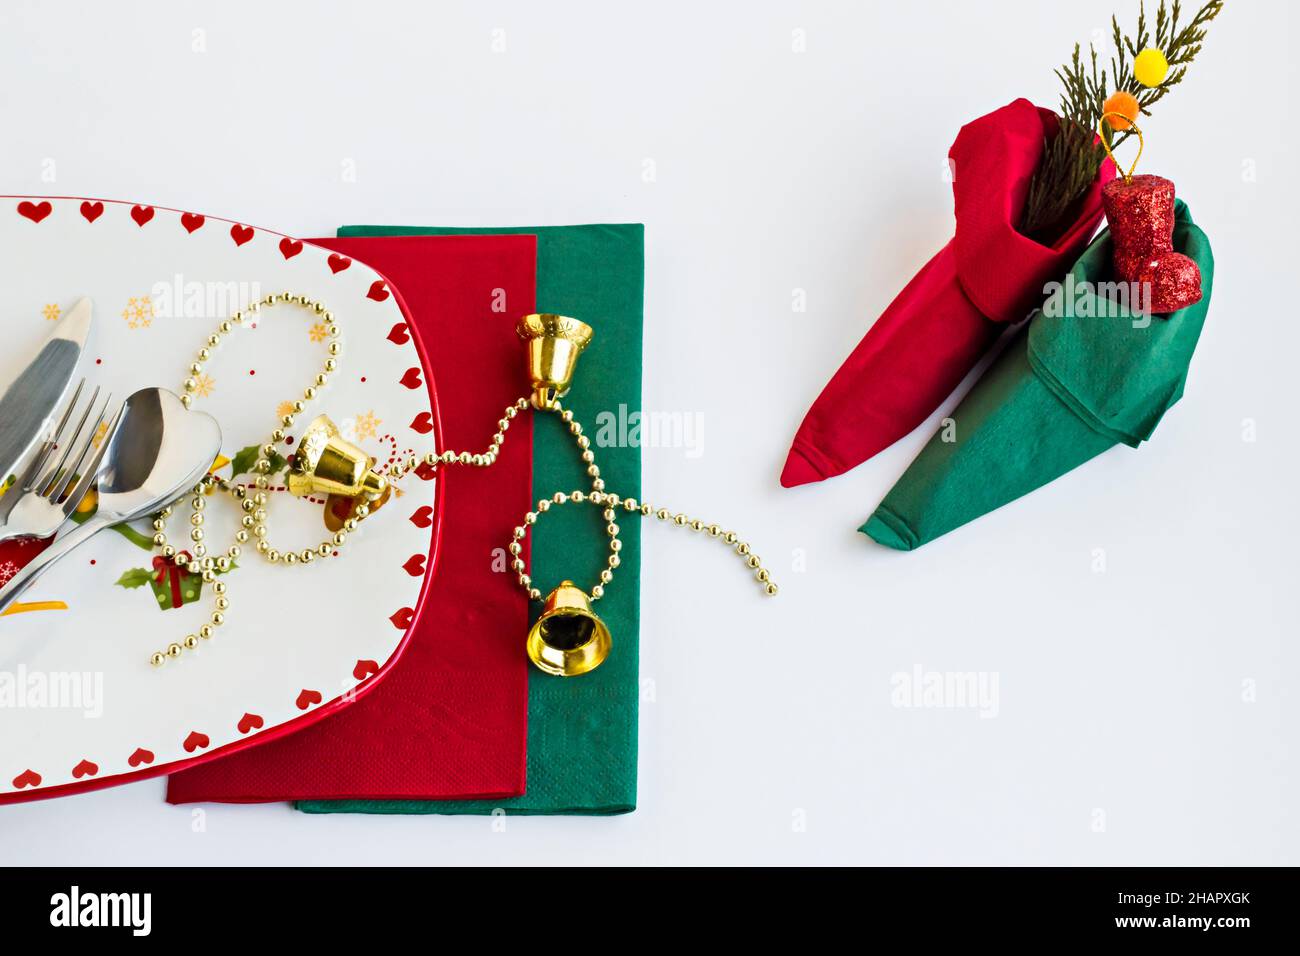 Assiette de Noël élégante et vide et couverts sur une surface blanche avec des serviettes vertes et rouges, plié une petite chaussure d'elfe Banque D'Images